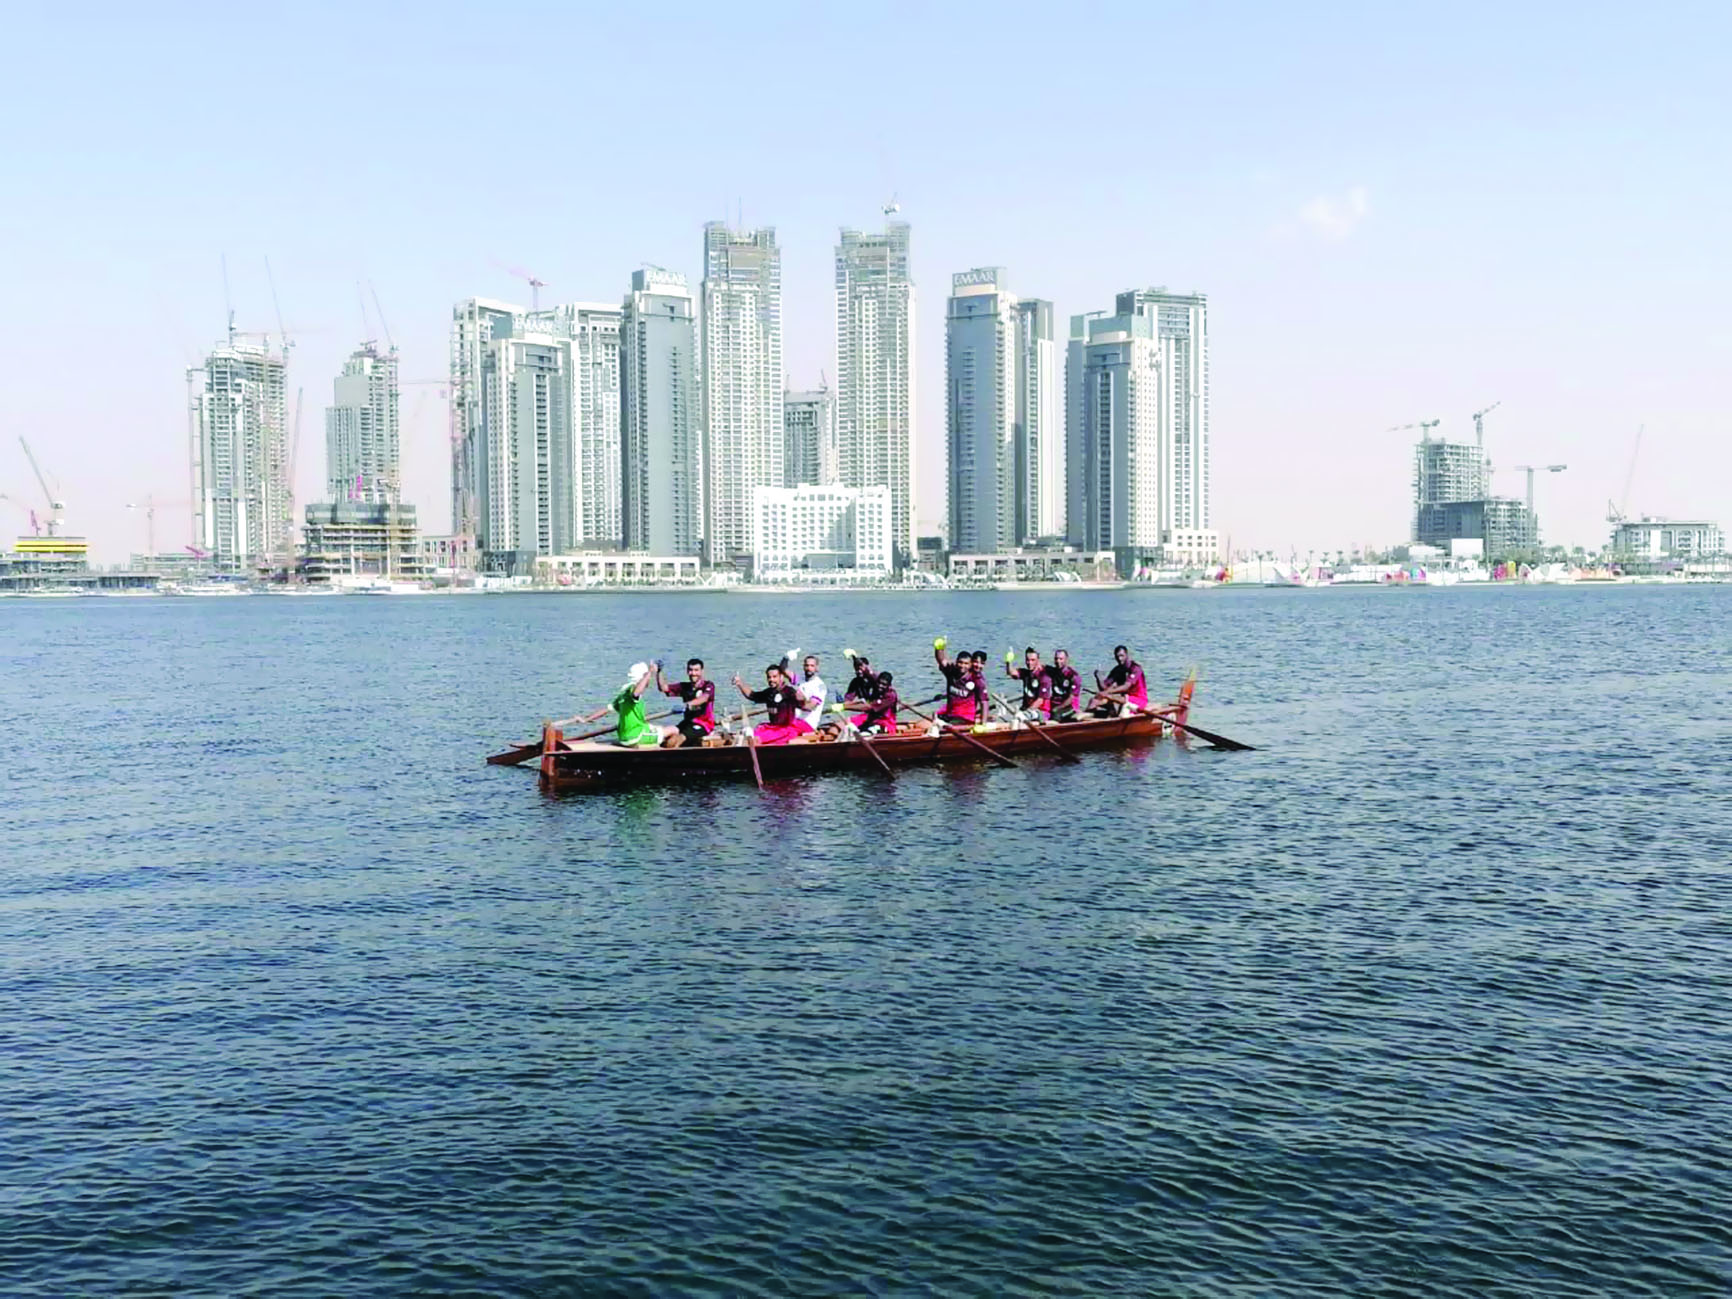 القارب "عمان"  ينتزع المركز الأول في "سباقات دبي"